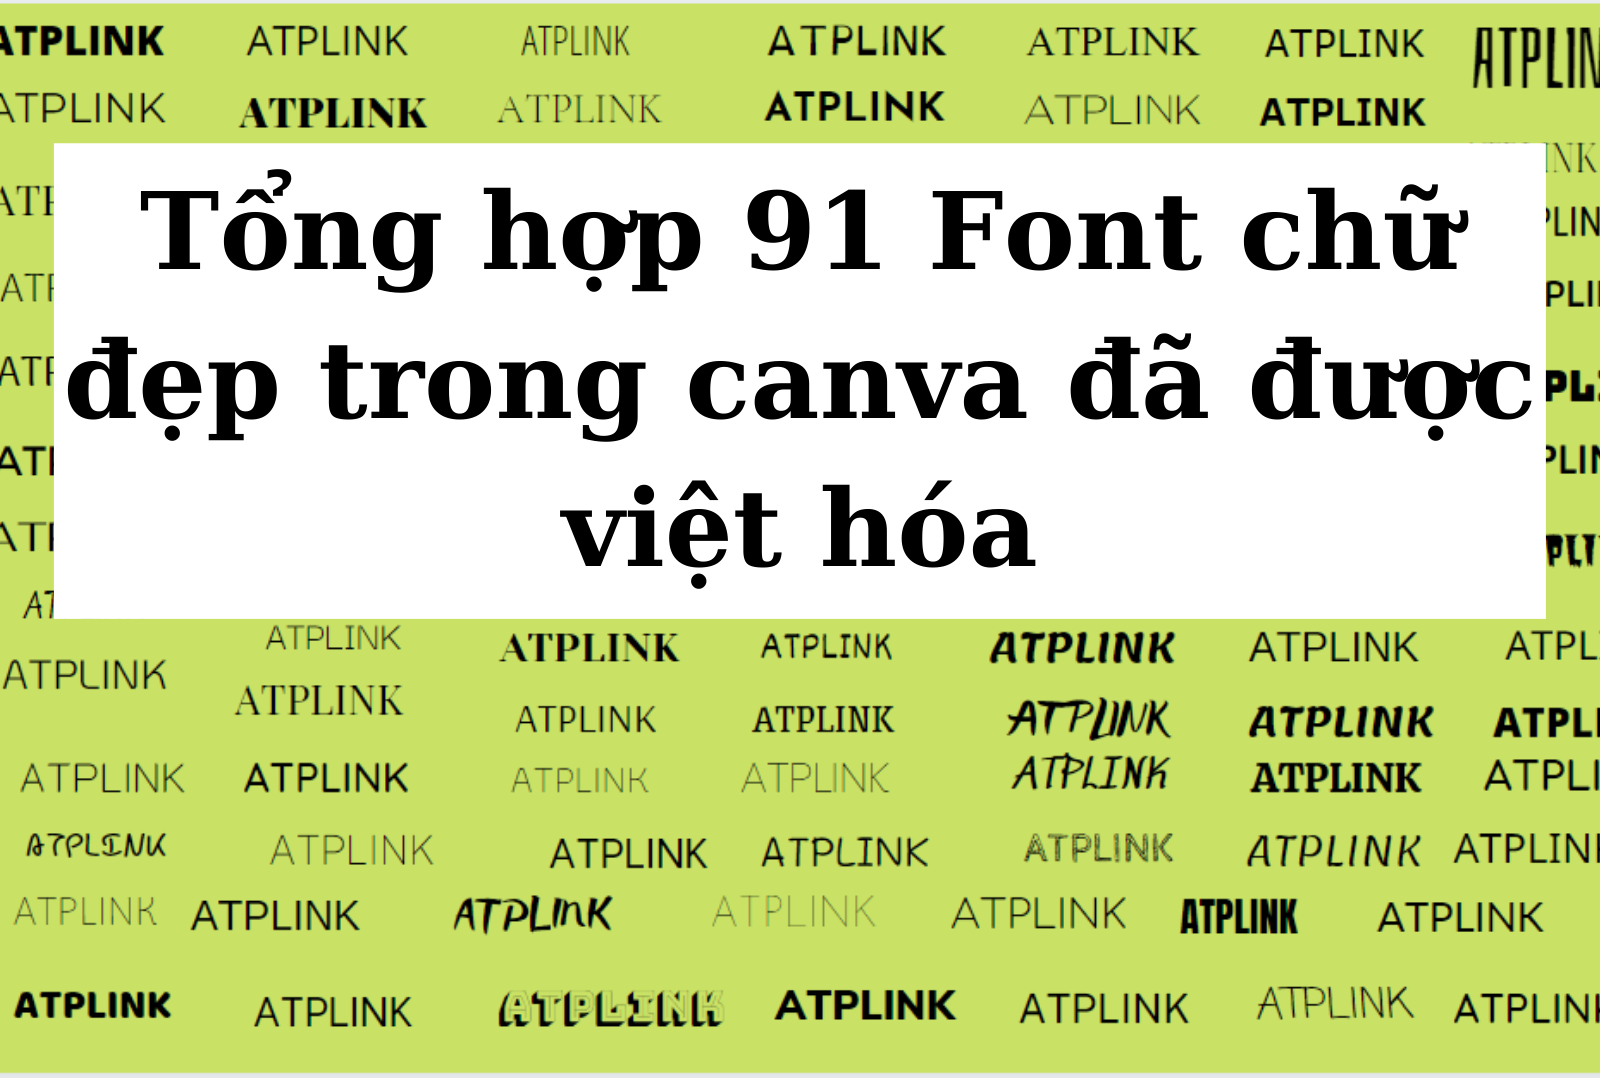 Hướng dẫn chi tiết Các phông chữ Tiếng Việt đẹp trên Canva Để tạo ra những tác phẩm chuyên nghiệp